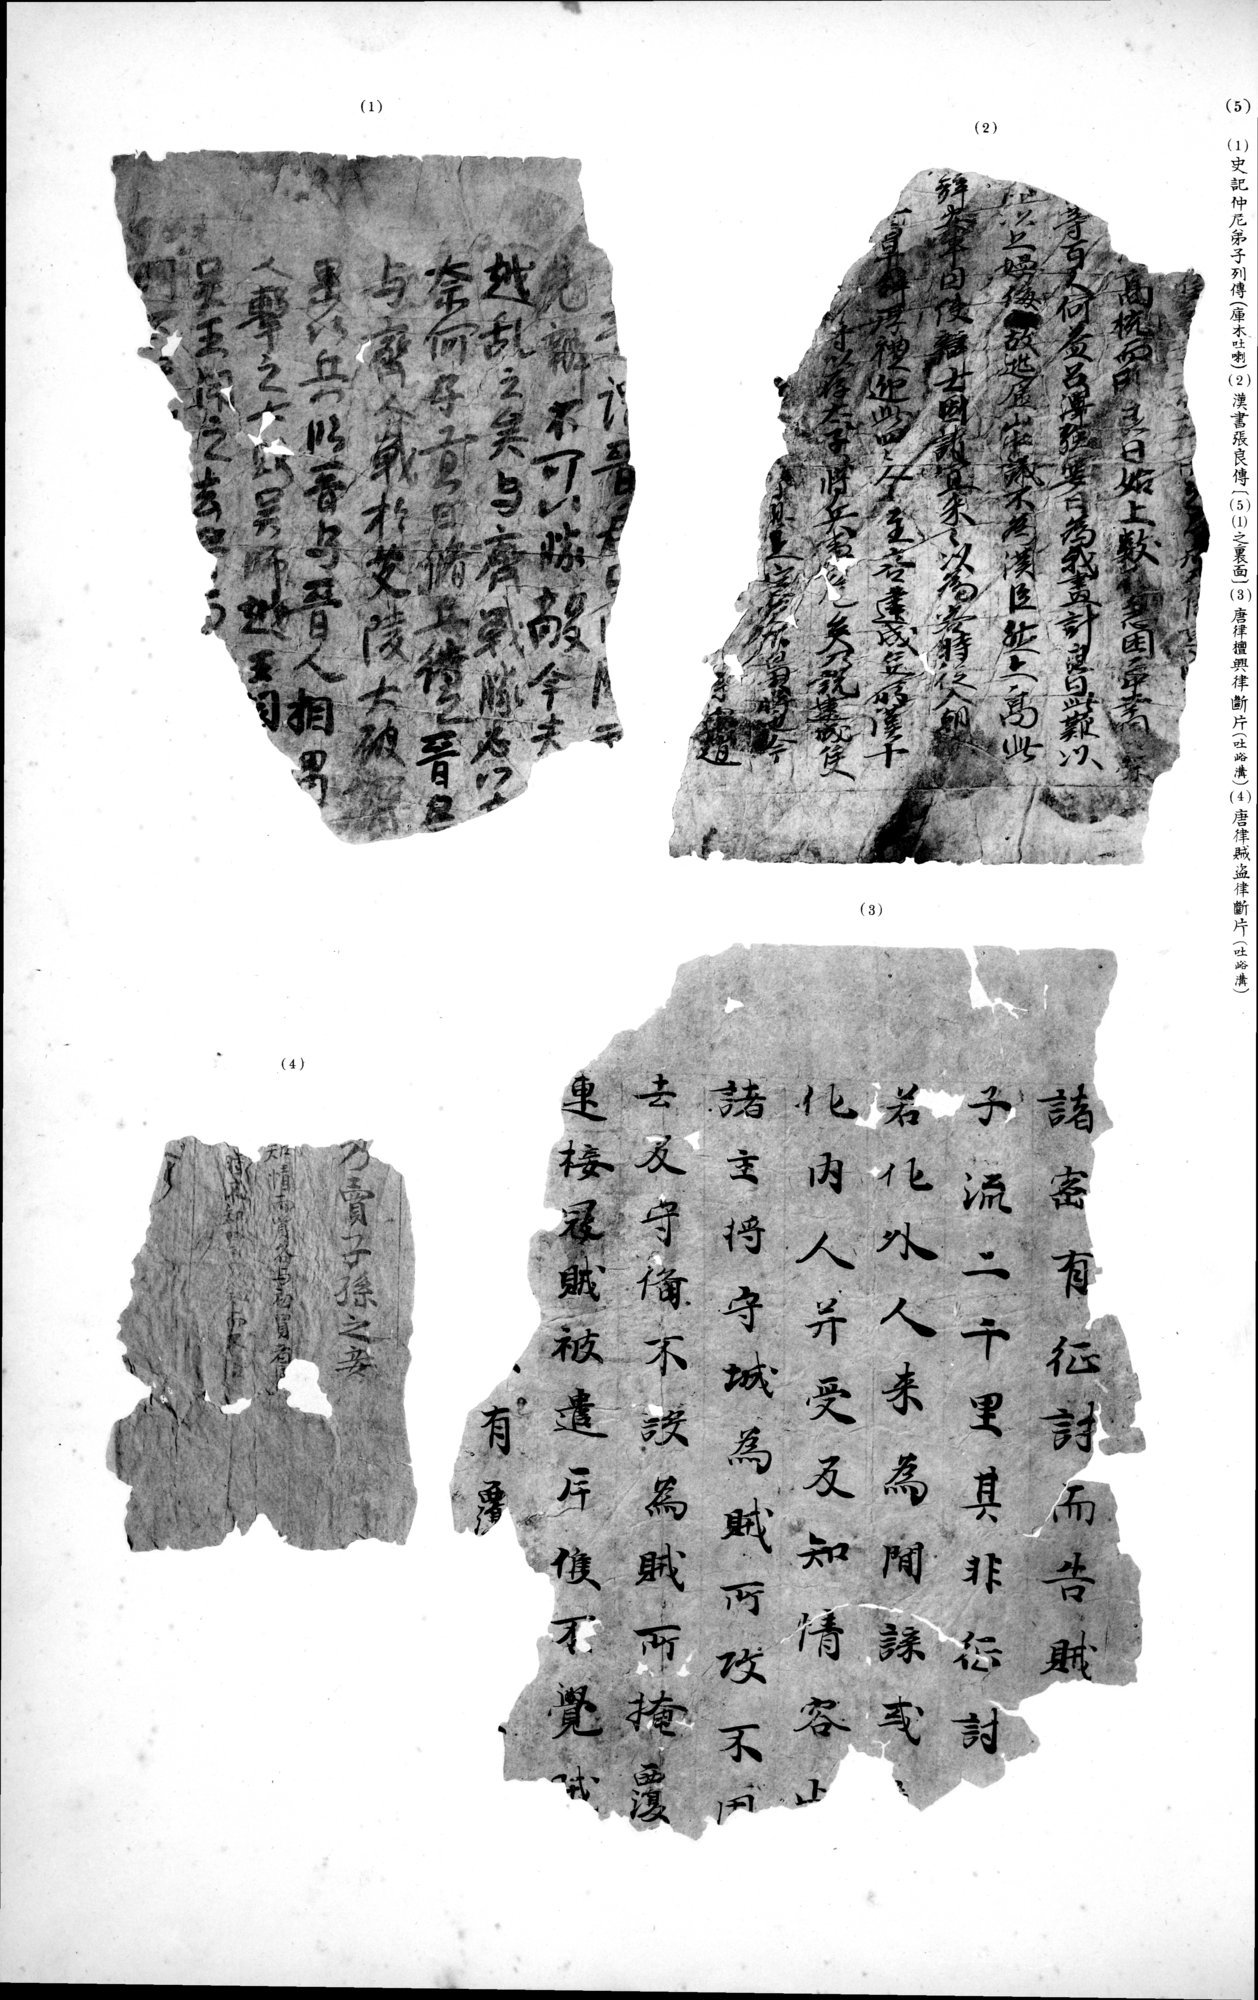 西域考古図譜 : vol.2 / 239 ページ（白黒高解像度画像）